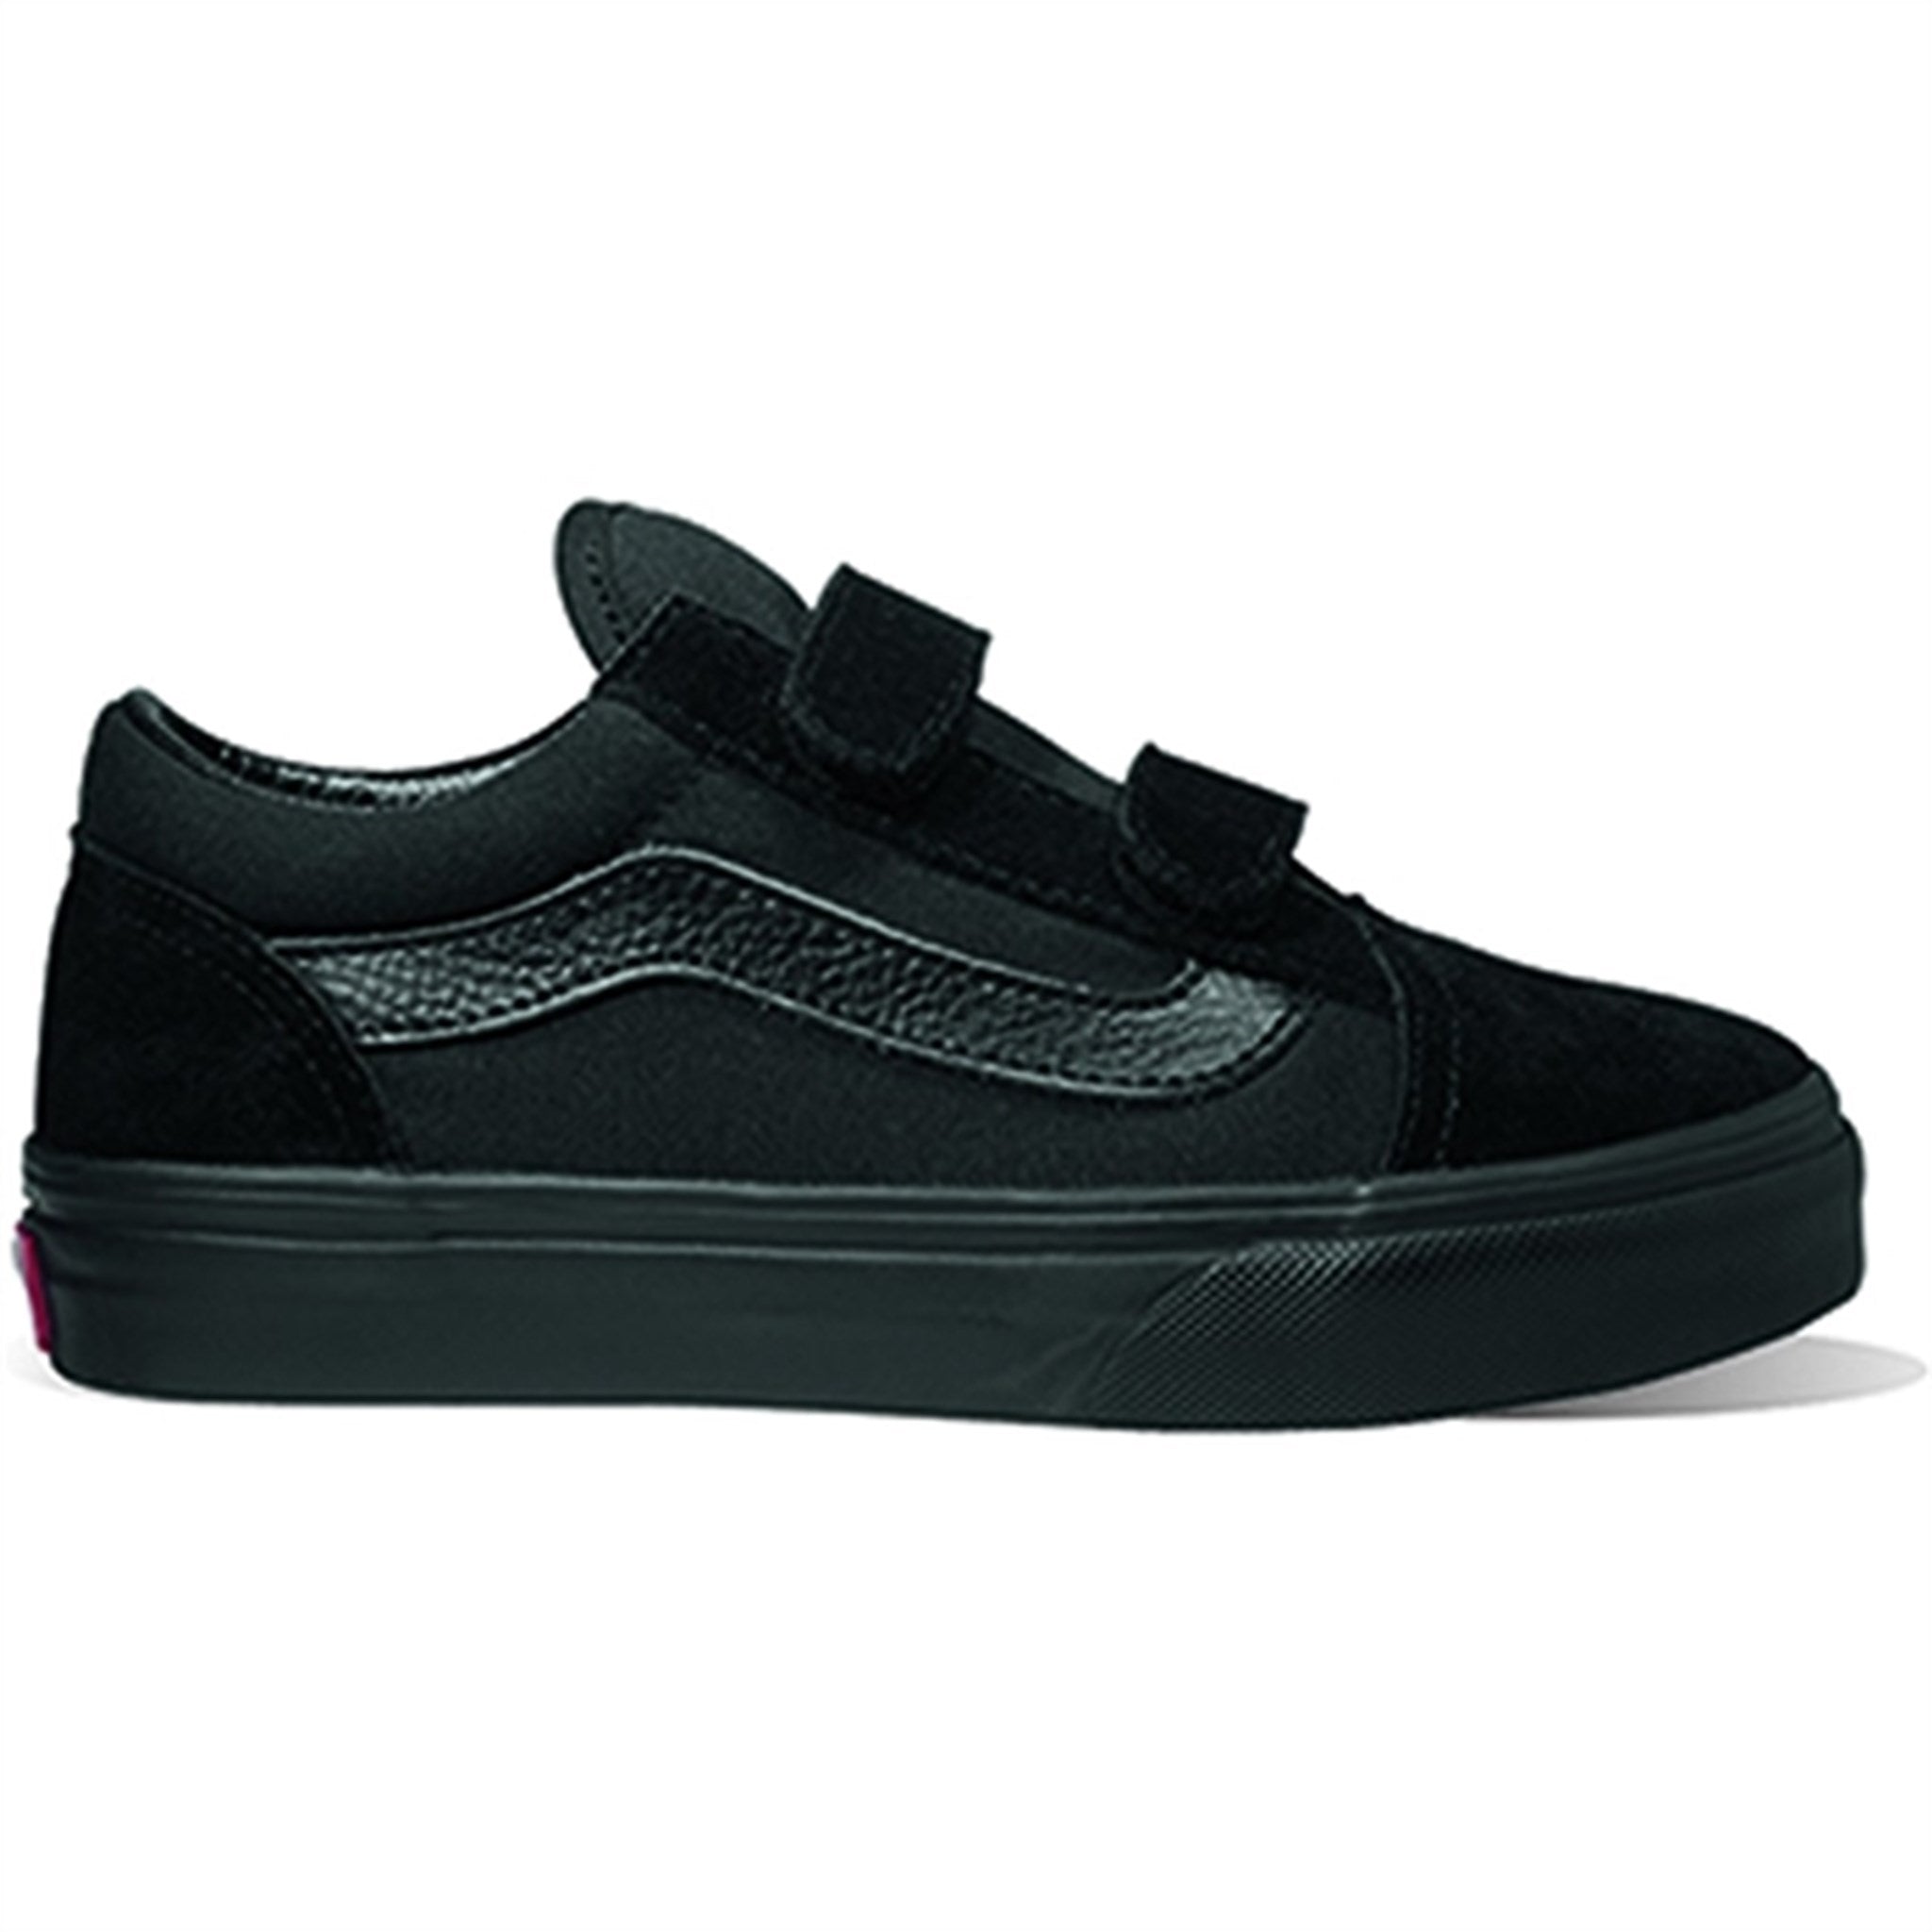 VANS Uy Old Skool V Black/Black Sneakers 4